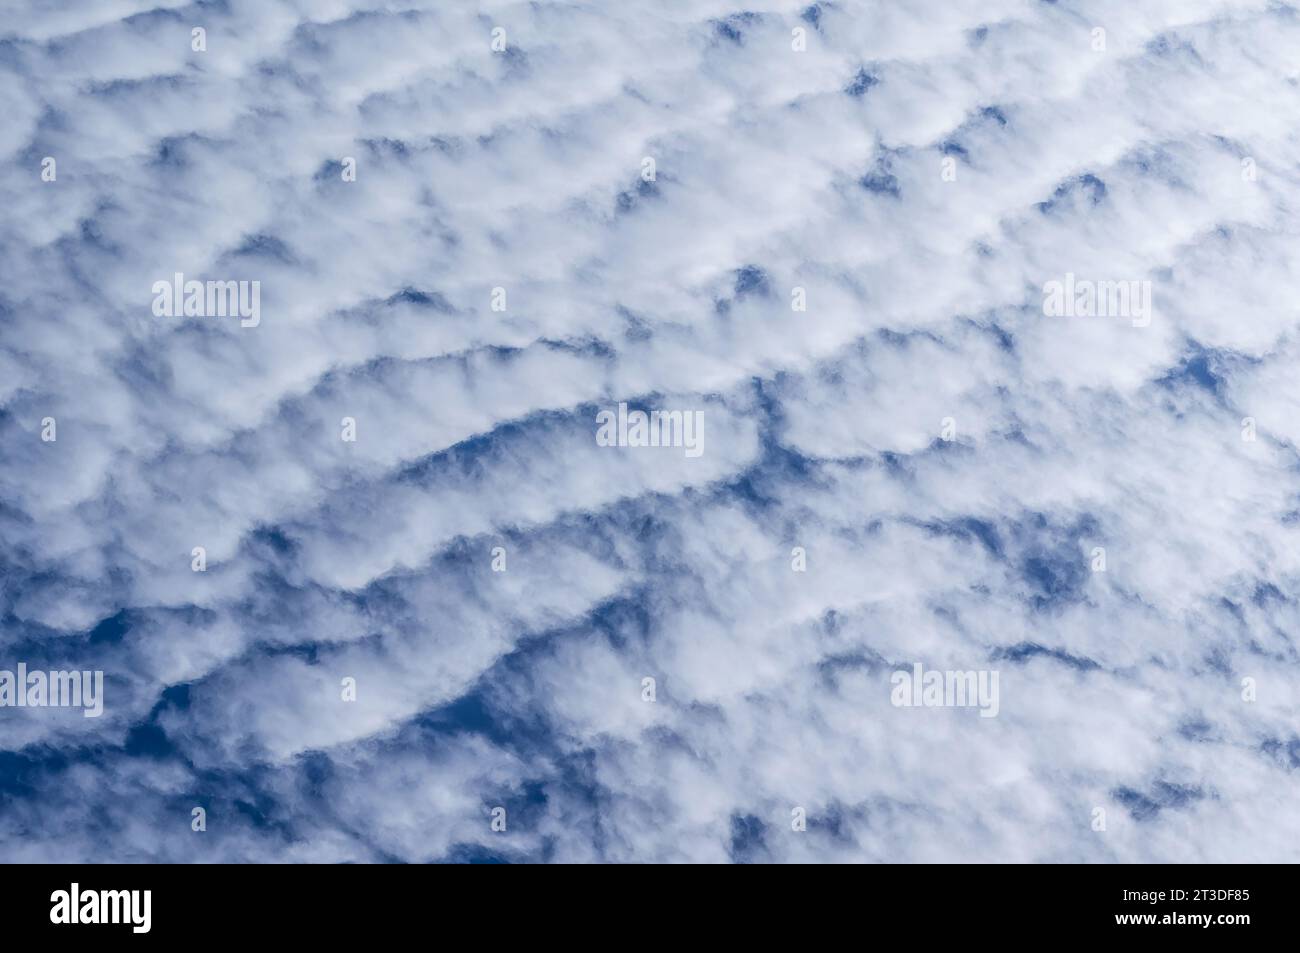 Das Foto fängt die ruhige Schönheit eines klaren blauen Himmels mit flauschigen weißen Wolken ein. Stockfoto